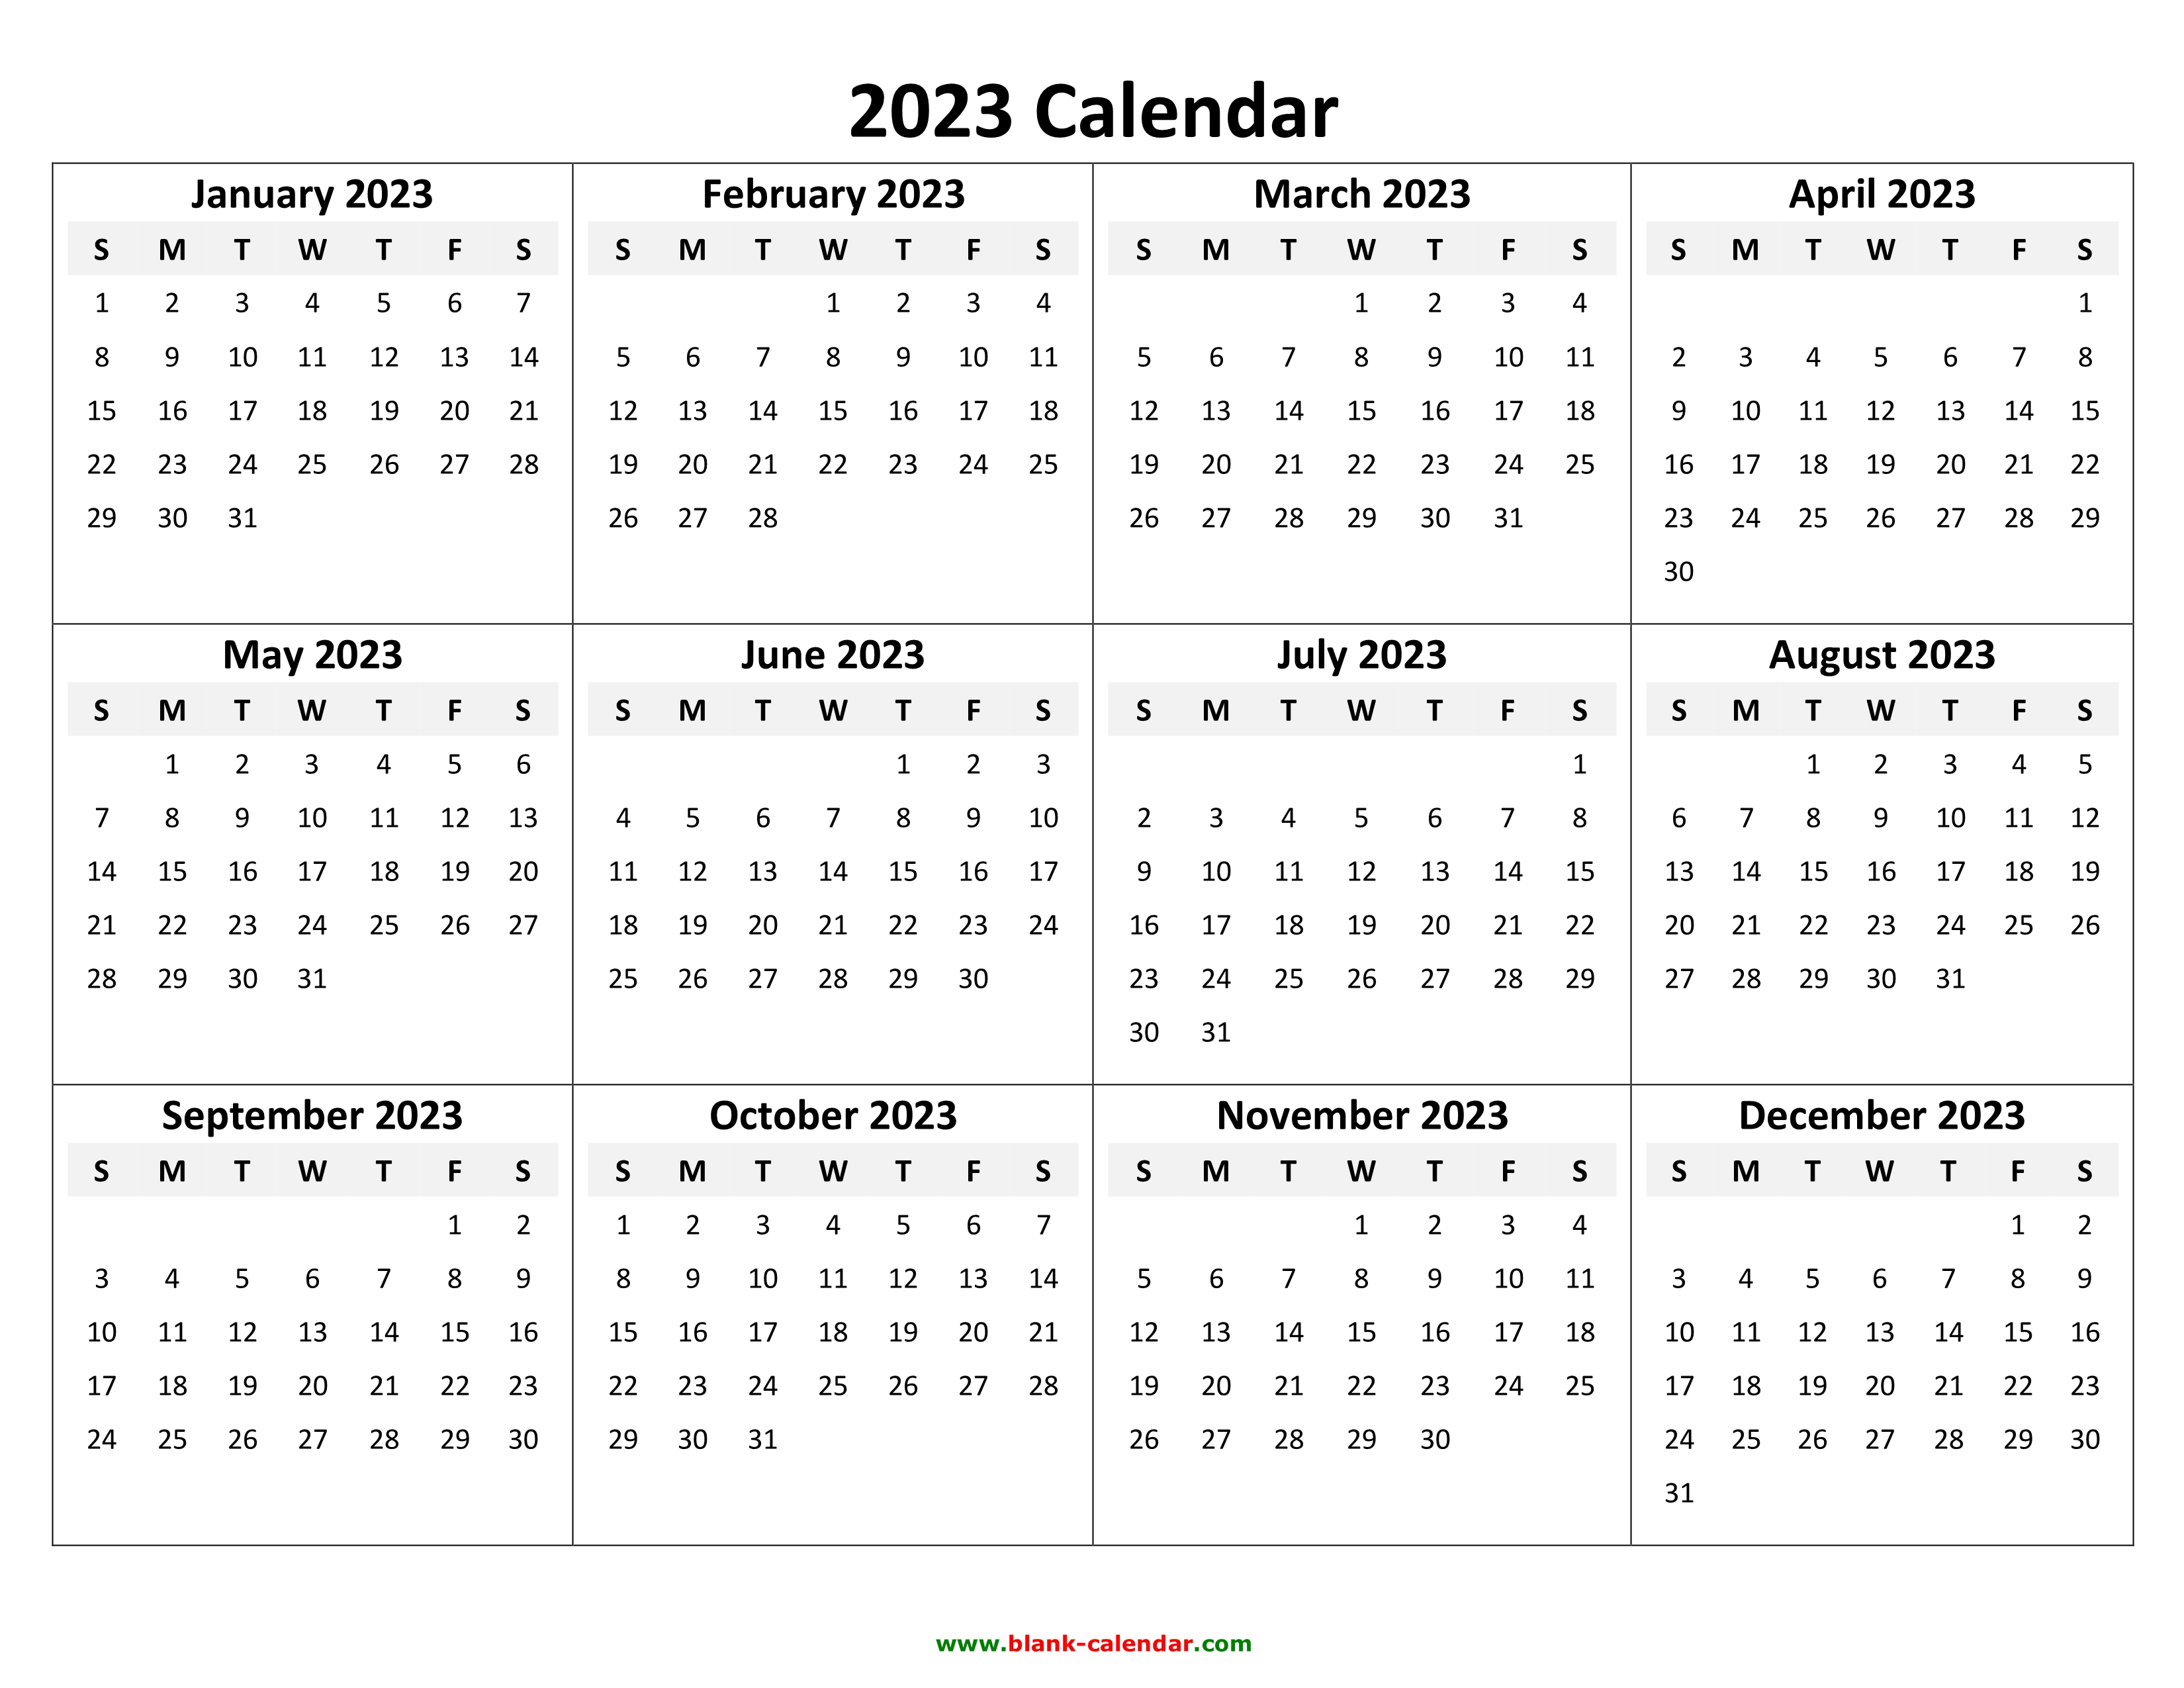 free-annual-calendar-2023-get-calendar-2023-update